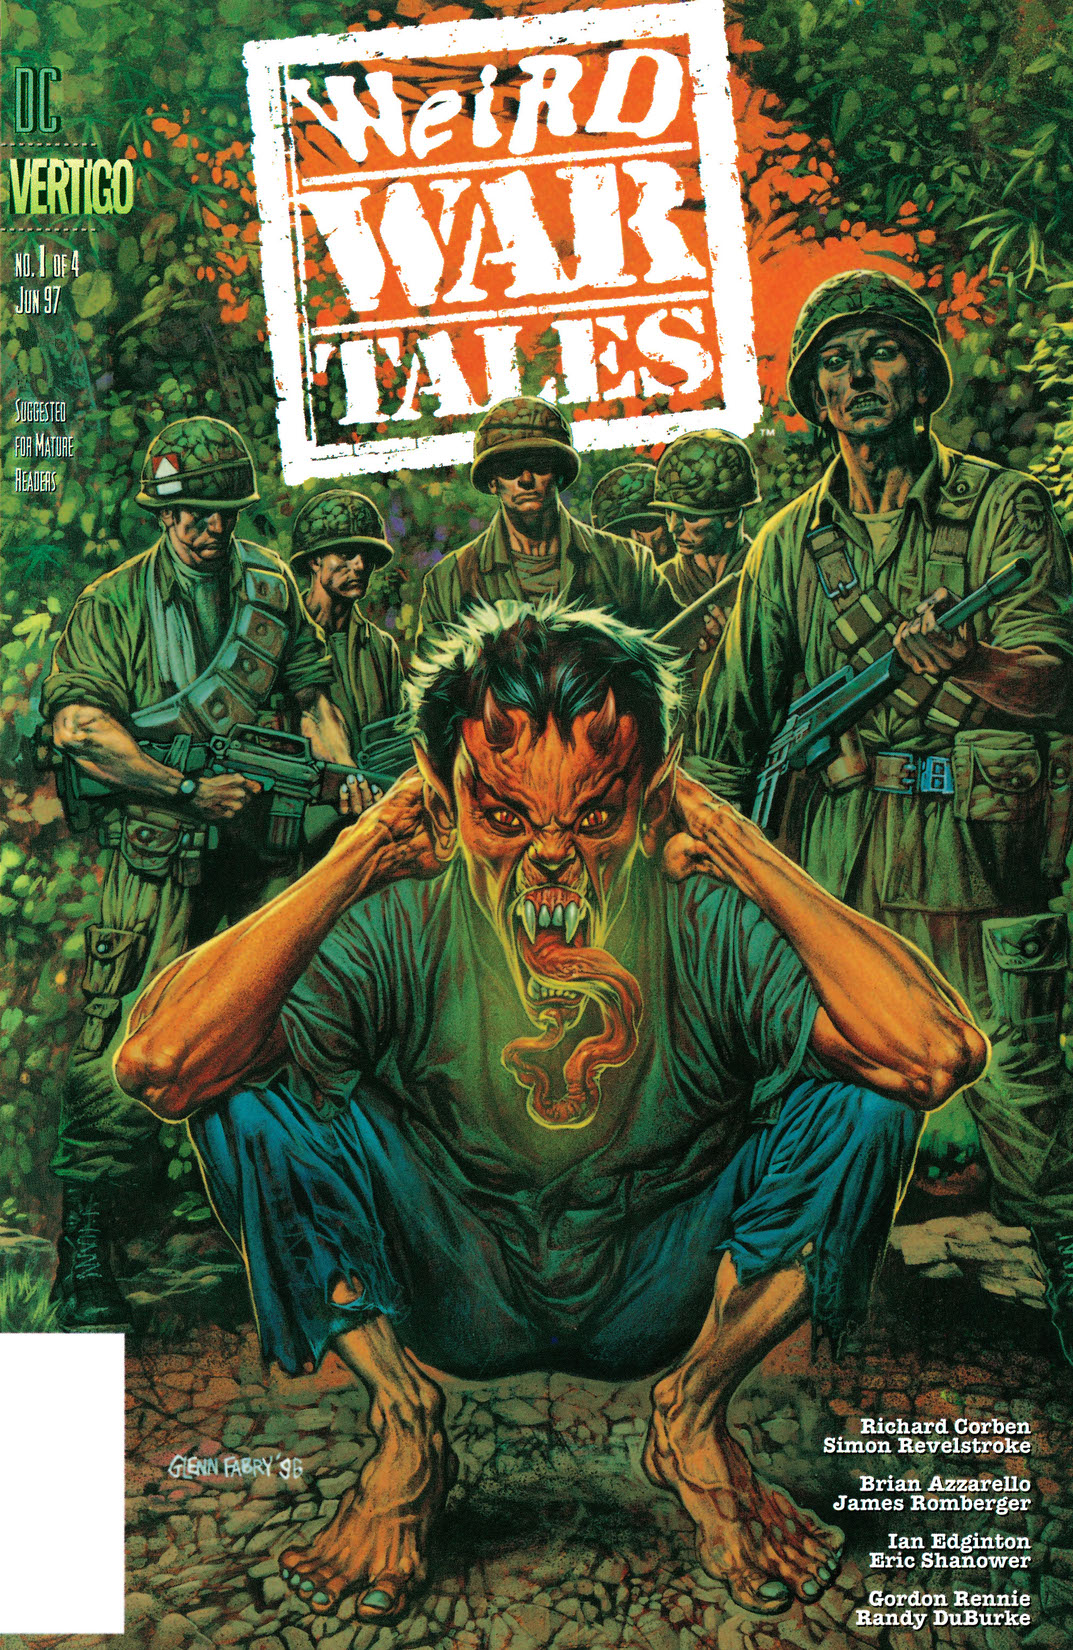 Weird War Tales #1 preview images